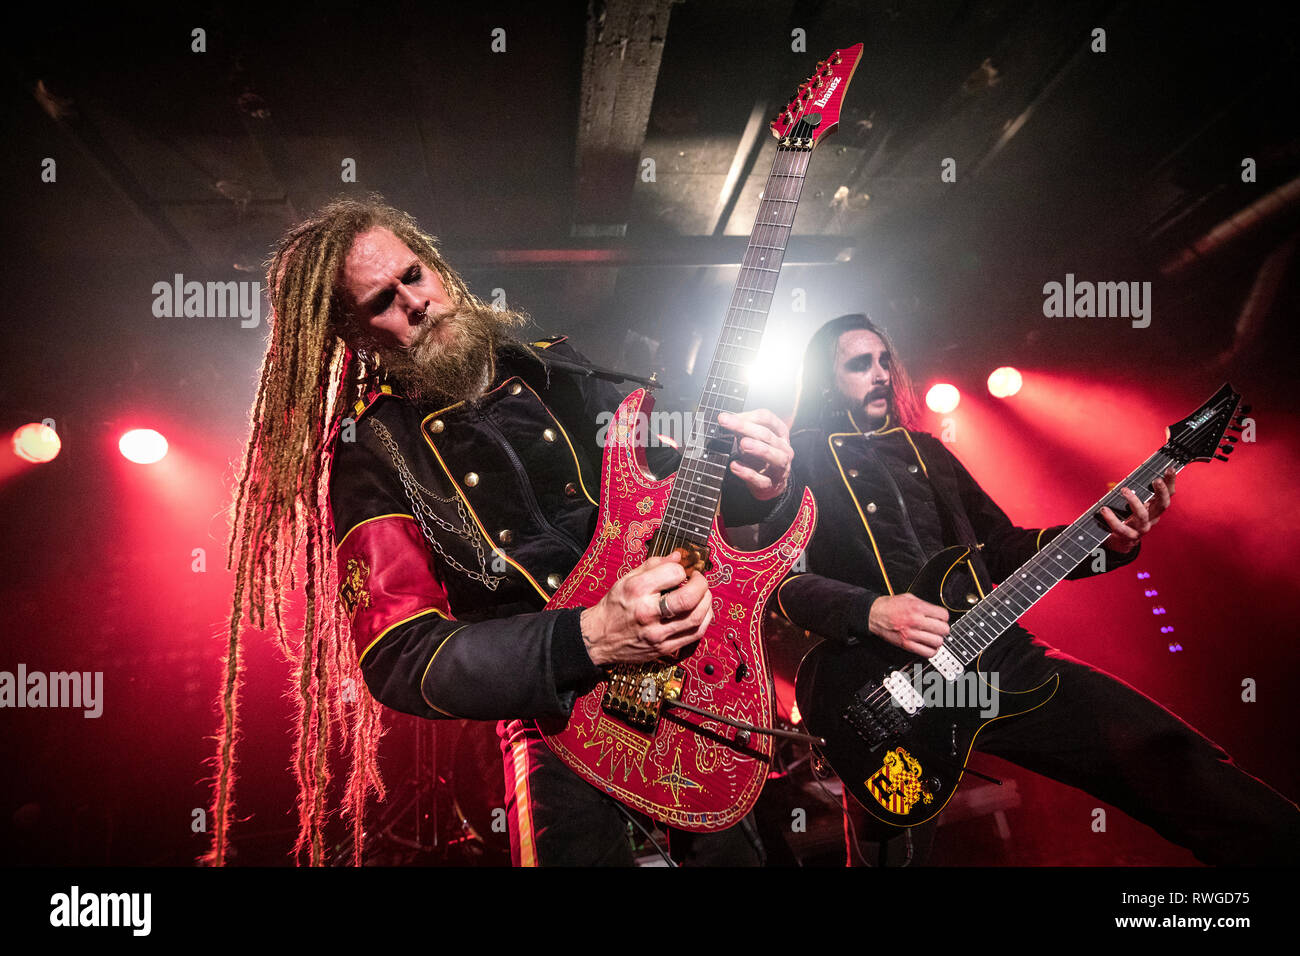 Norvège, Oslo - 3 mars, 2019. Le groupe de heavy metal suédois Avatar effectue un concert live à John Dee dans Oslo. Ici le guitariste Jonas Jarlsby alias Kungen est vu sur scène. (Photo crédit : Gonzales Photo - Terje Dokken). Banque D'Images